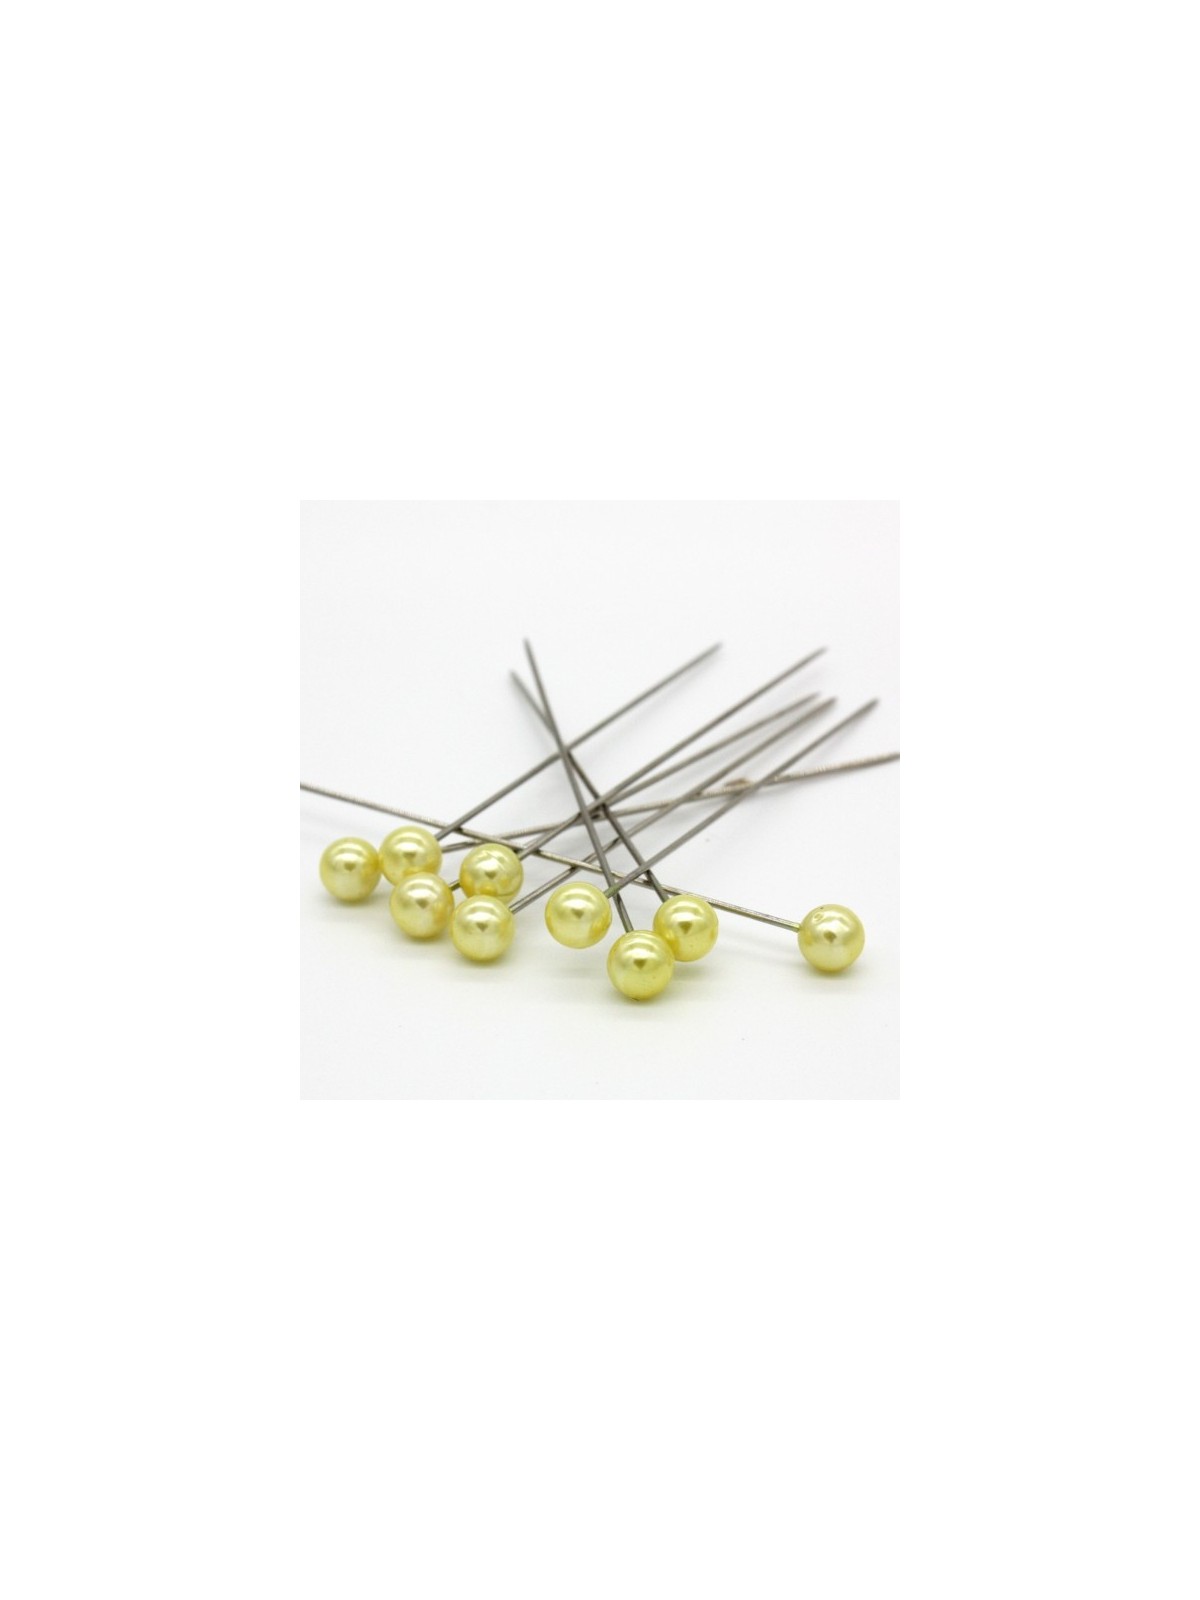 Dekorační špendlík - žlutá  perla - 65mm/9ks